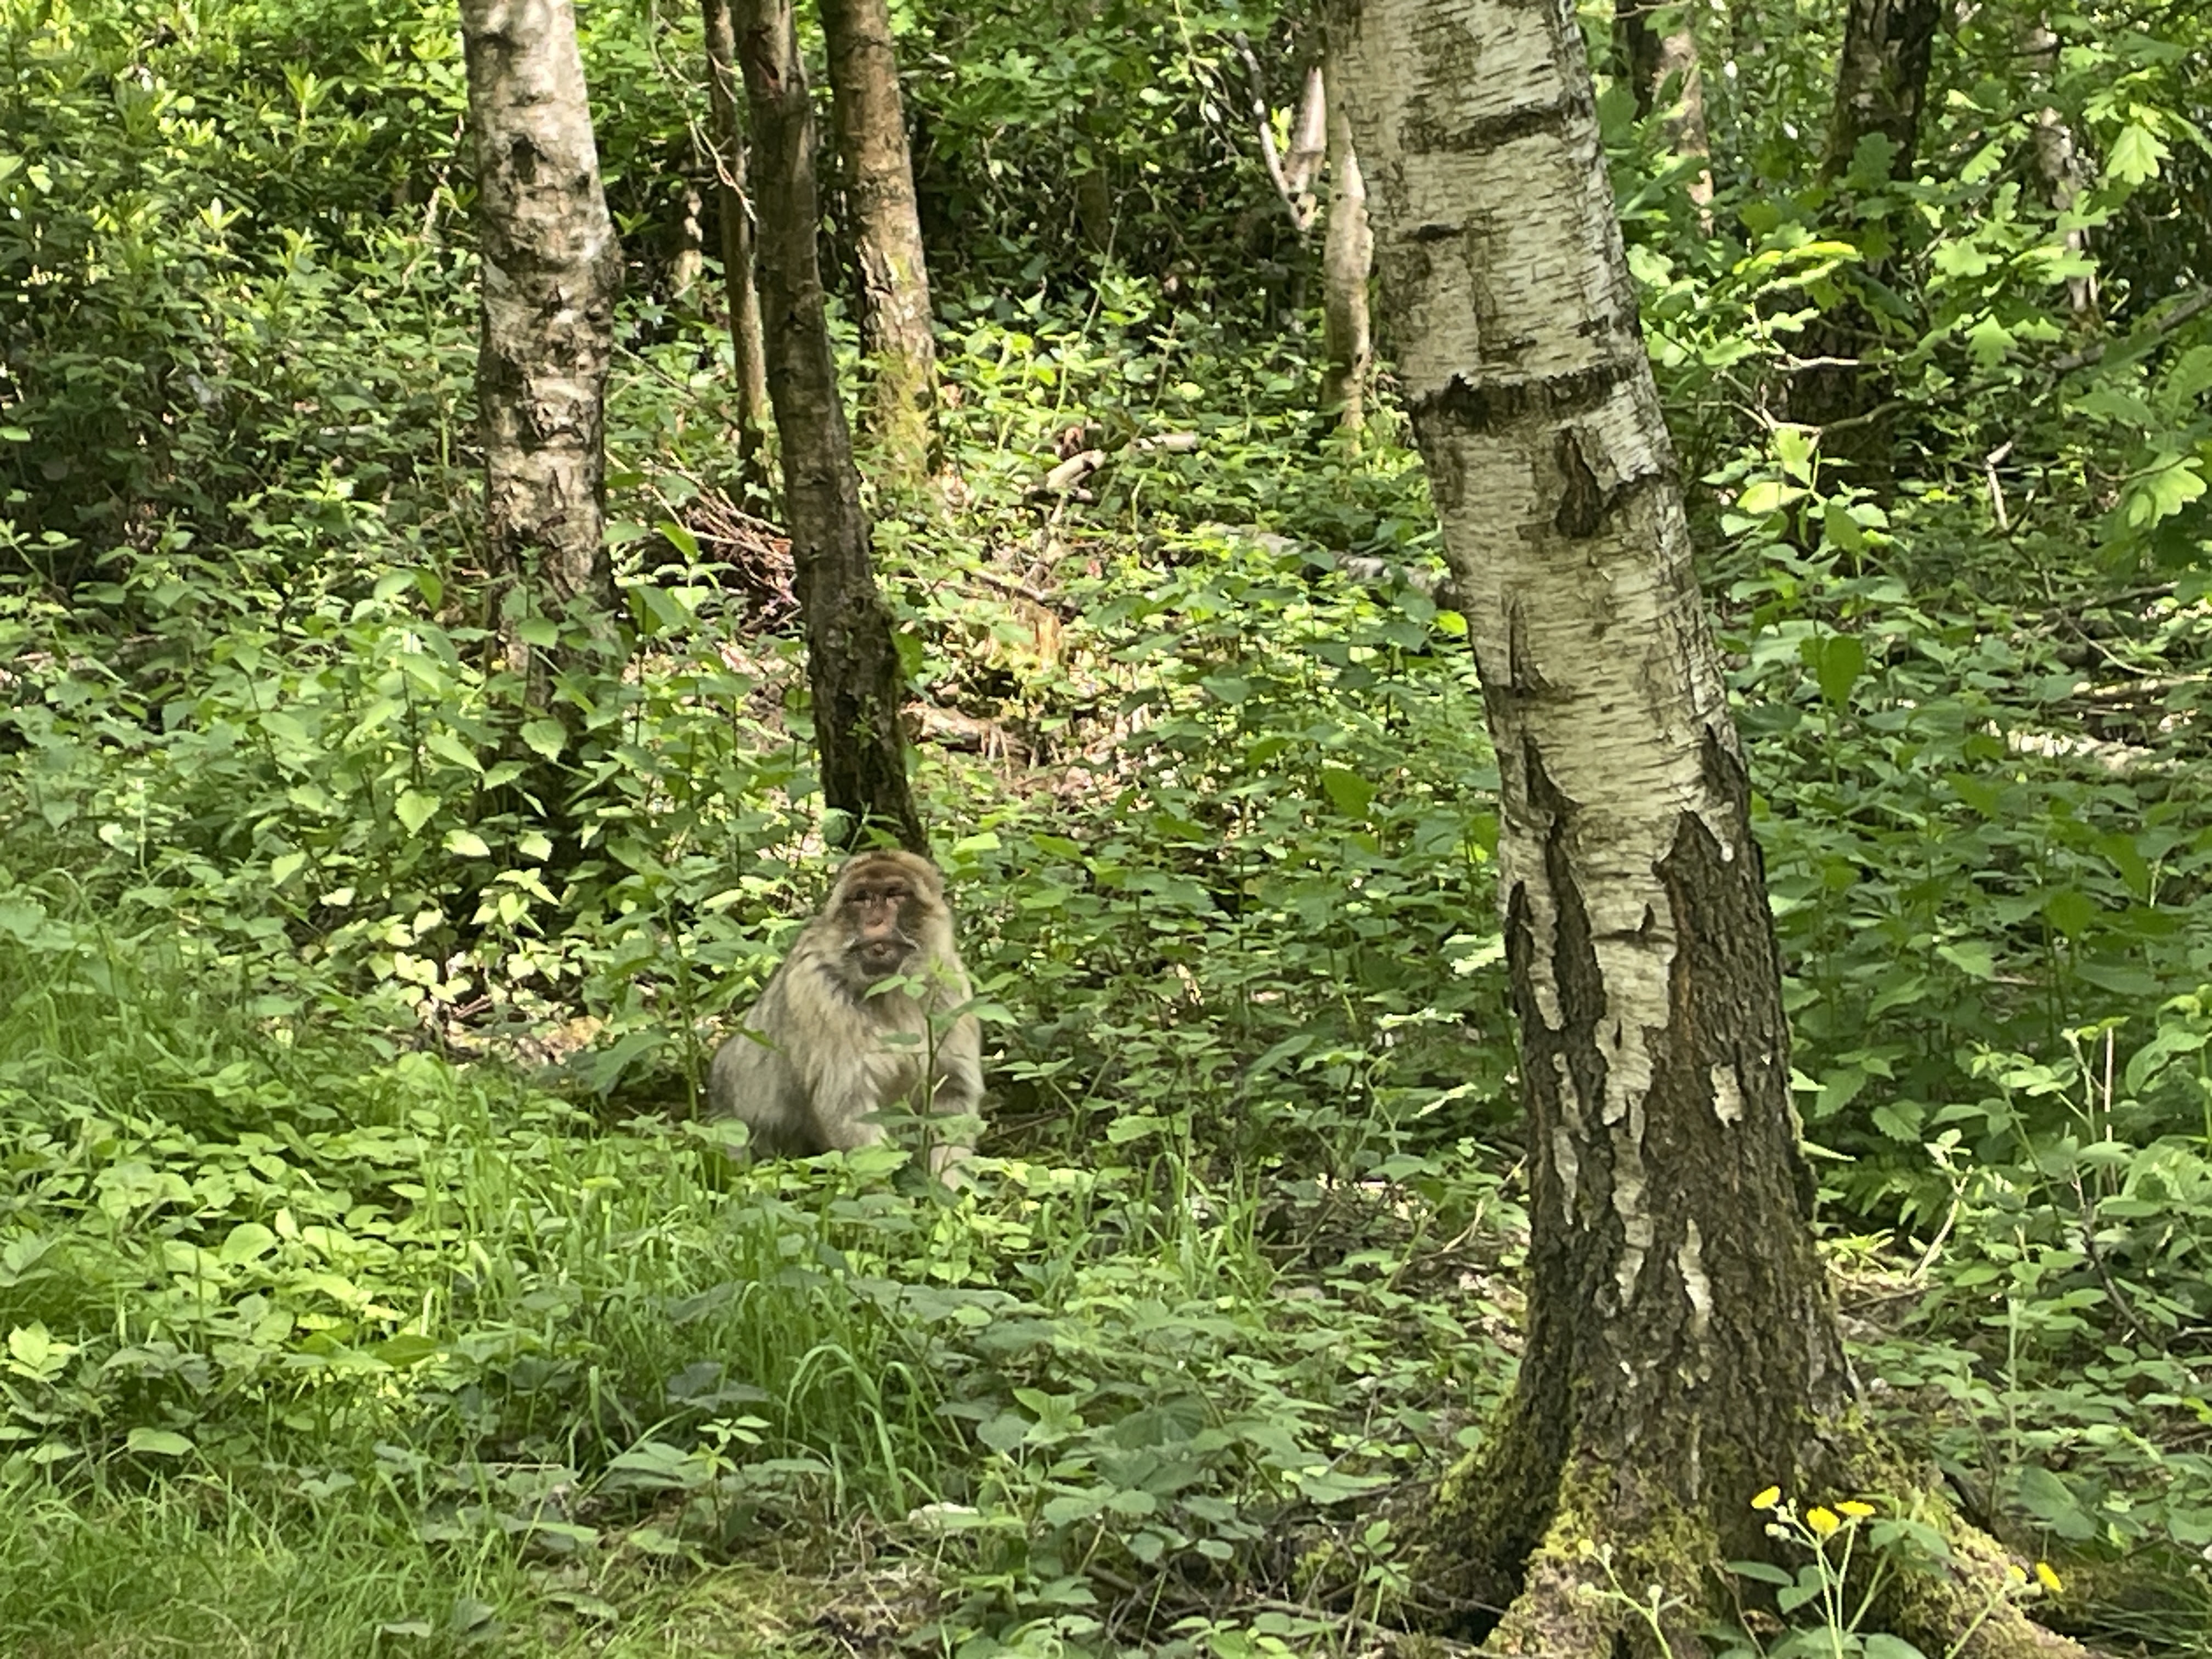 monkeys in forest